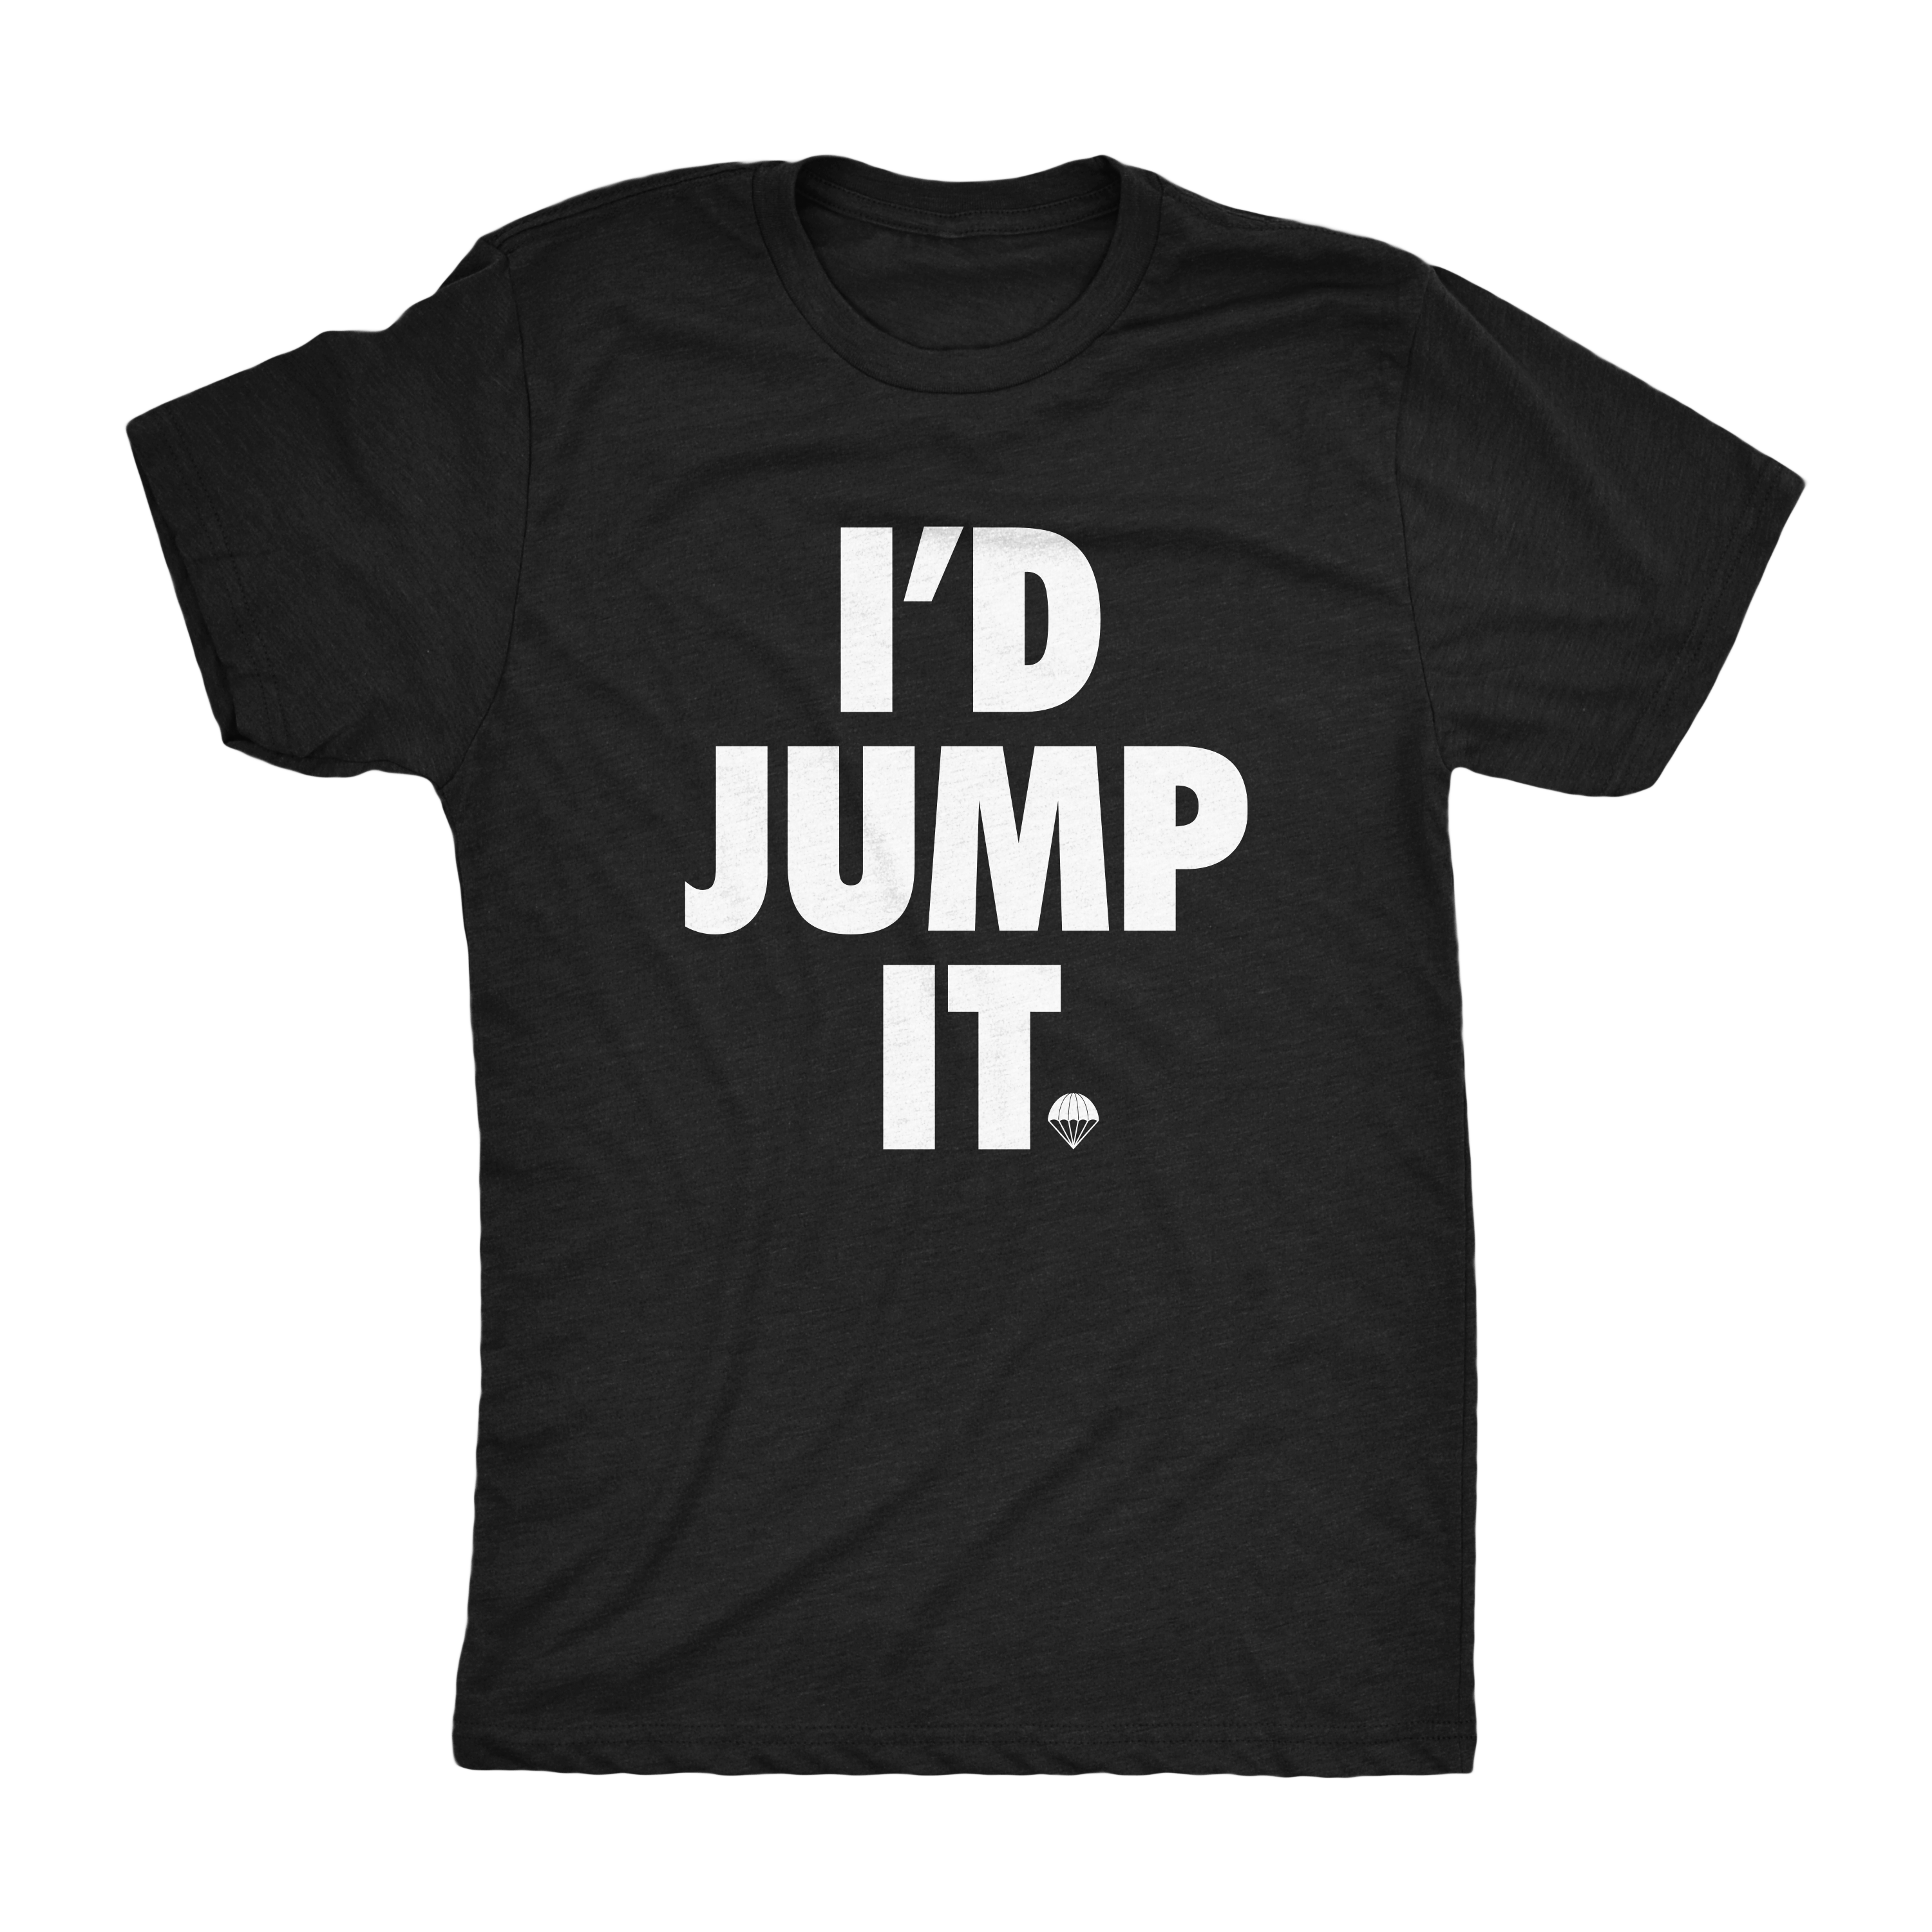 I'd Jump It Shirt